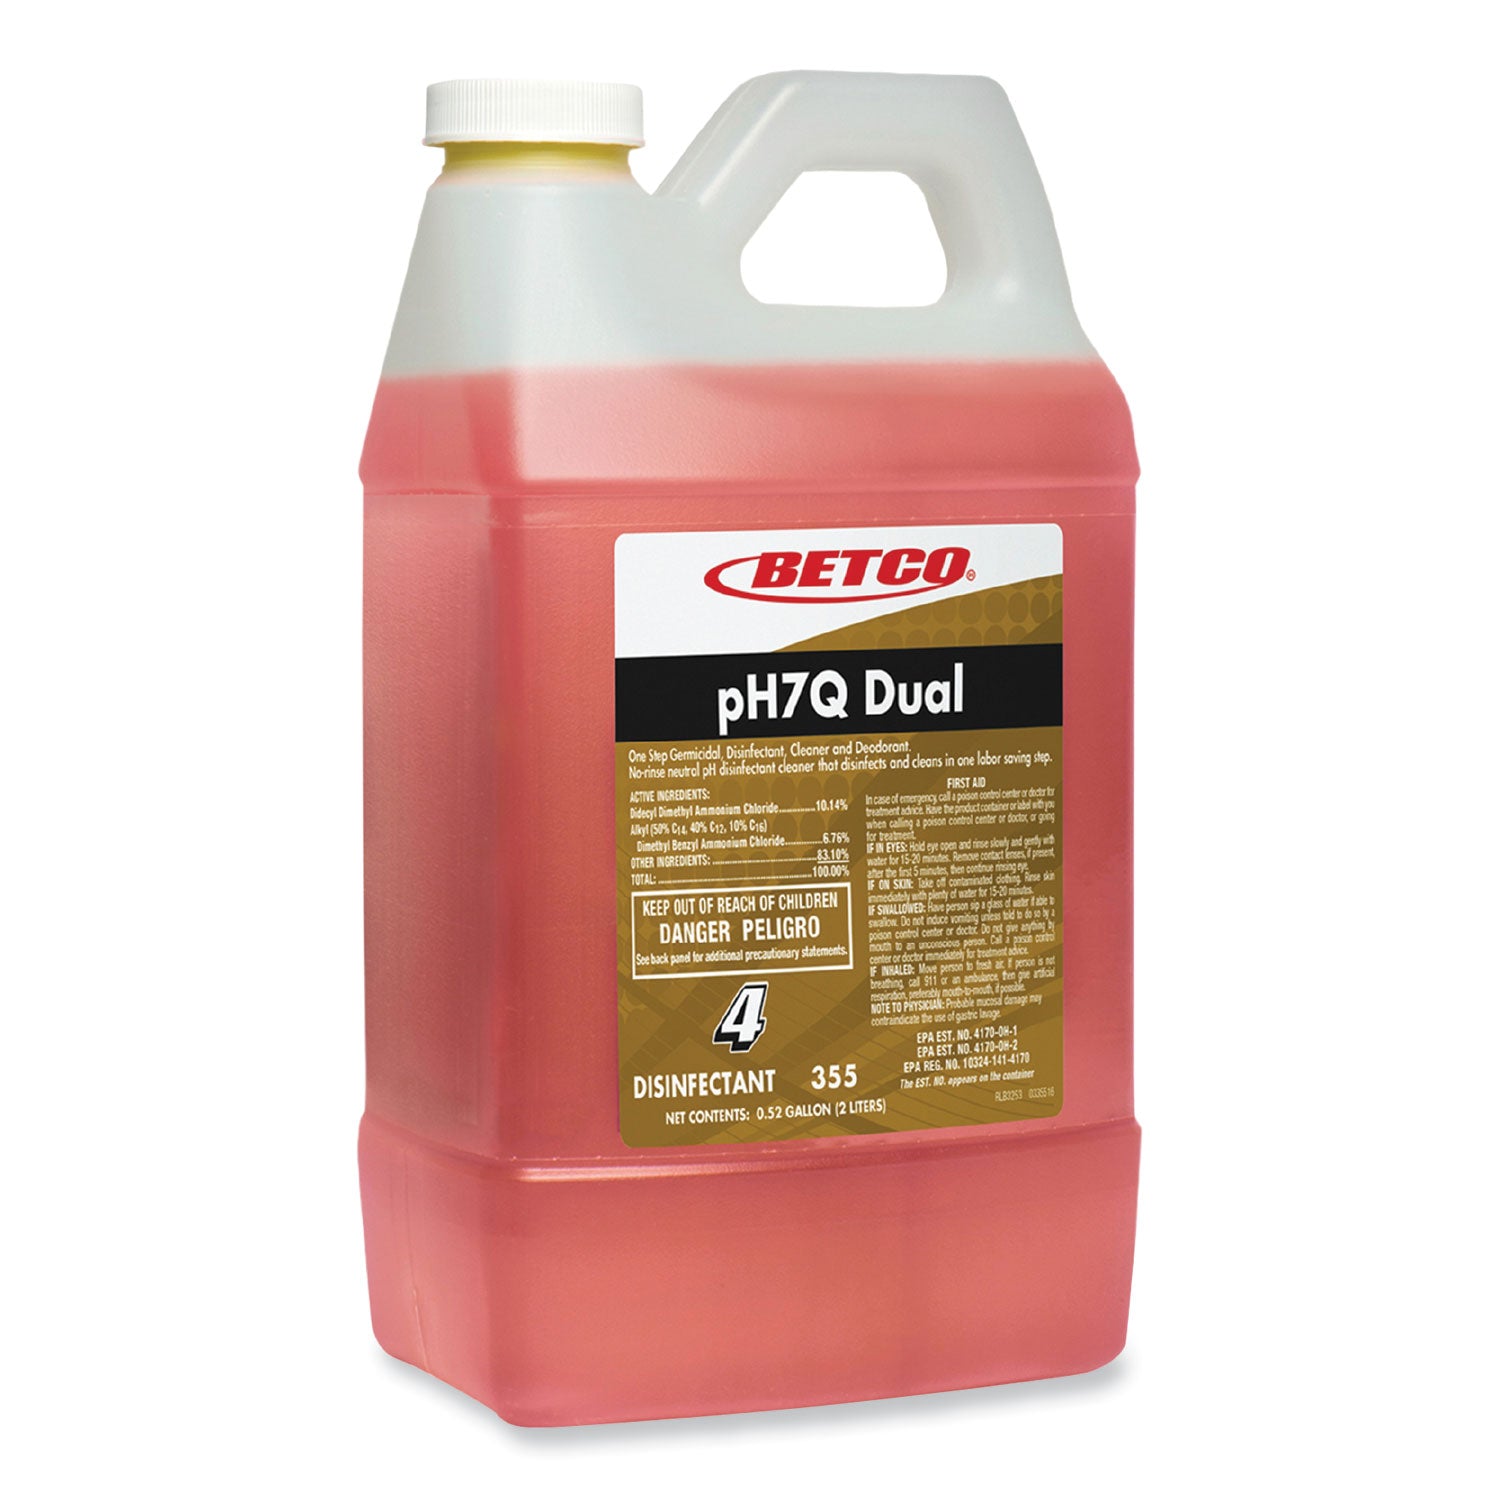 ph7q-dual-neutral-disinfectant-cleaner-lemon-scent-676-oz-bottle-4-carton_bet3554700 - 1